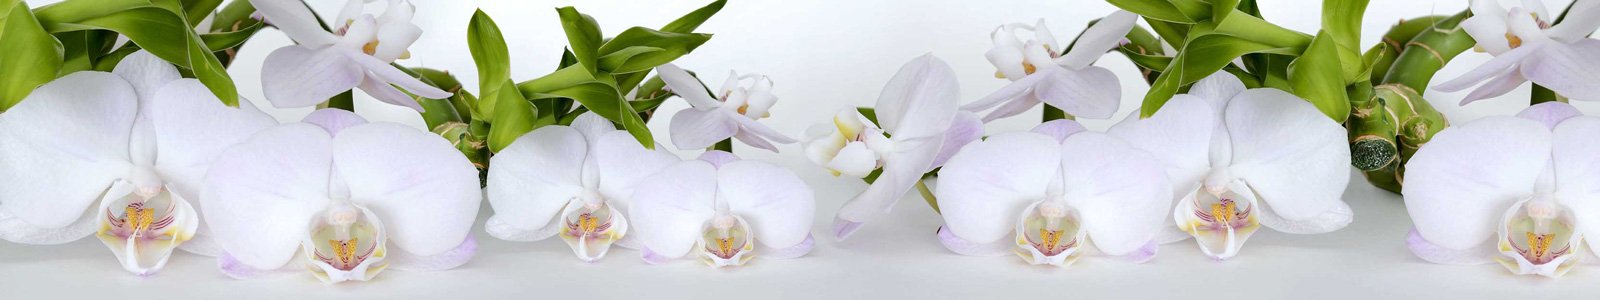 №6846 - Нежные белые орхидеи на фоне с бамбуком